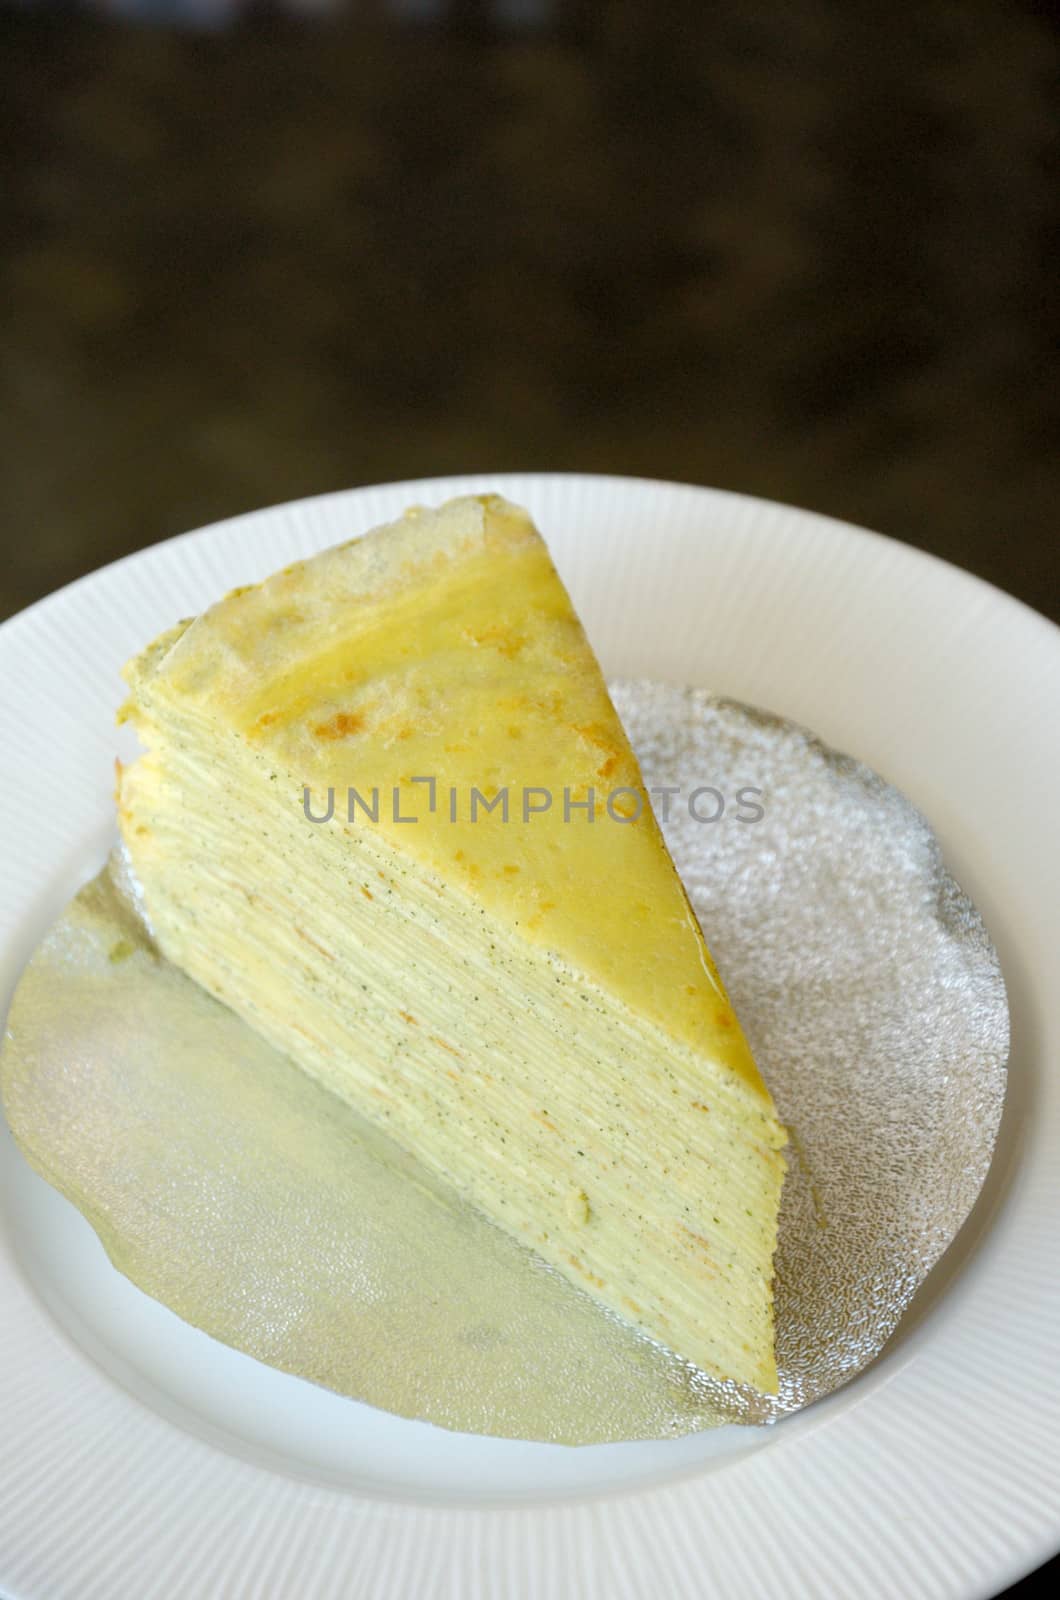 Crepe cake in white dish